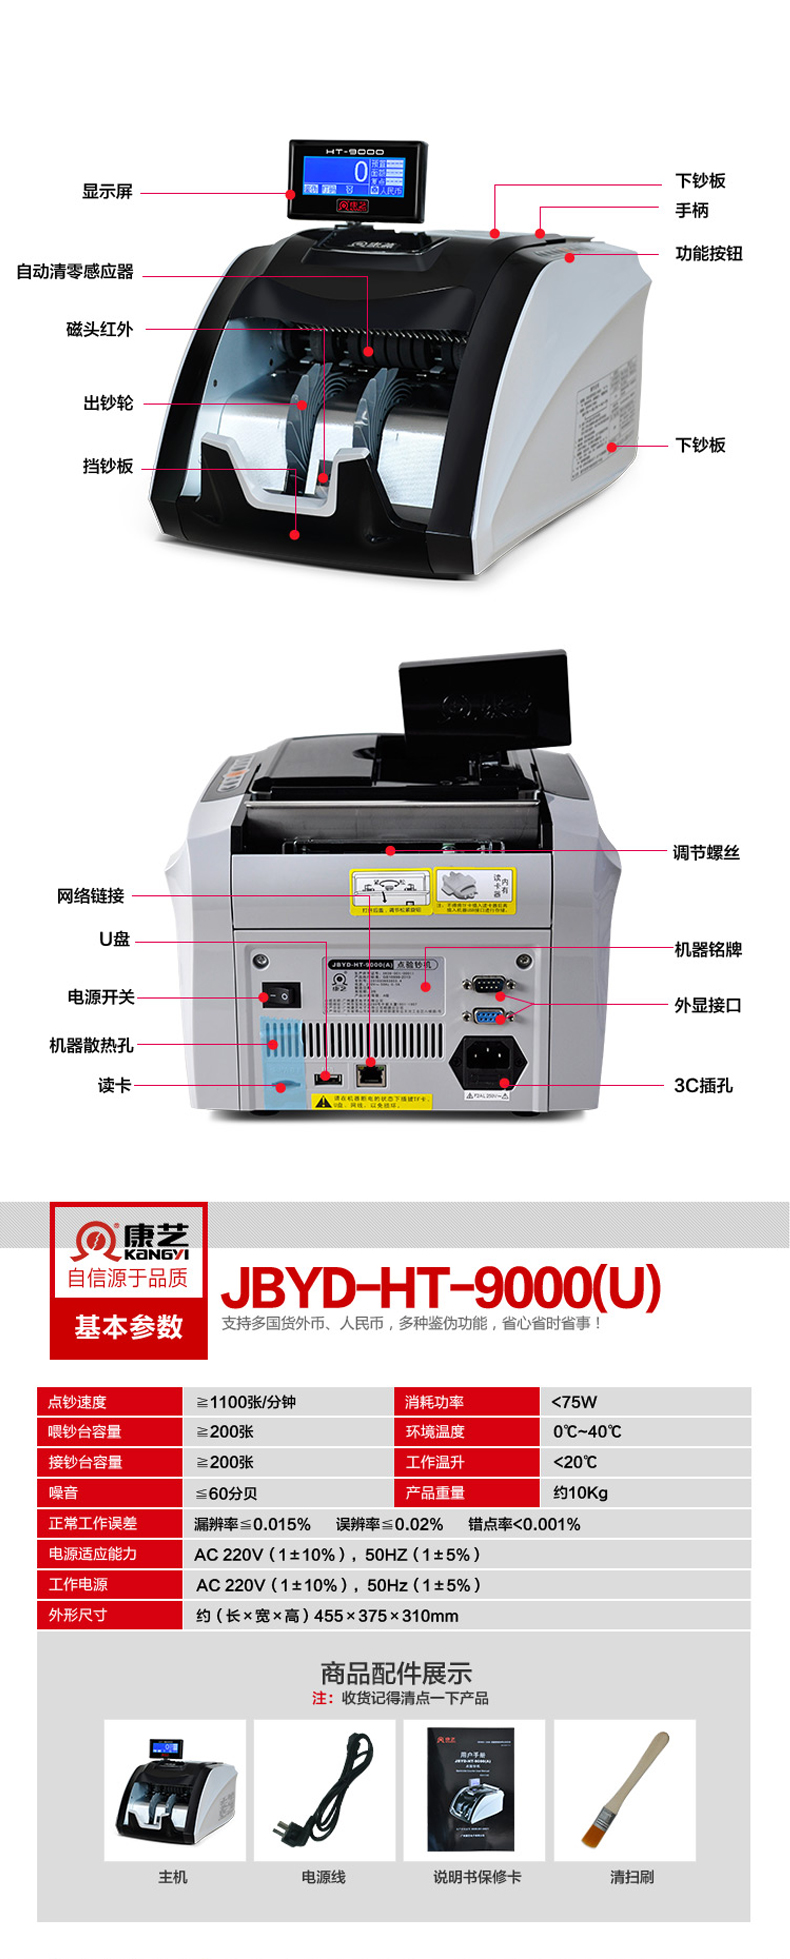 康艺 KKANGYI 点钞机 JBYD-HT-9000U(A) 